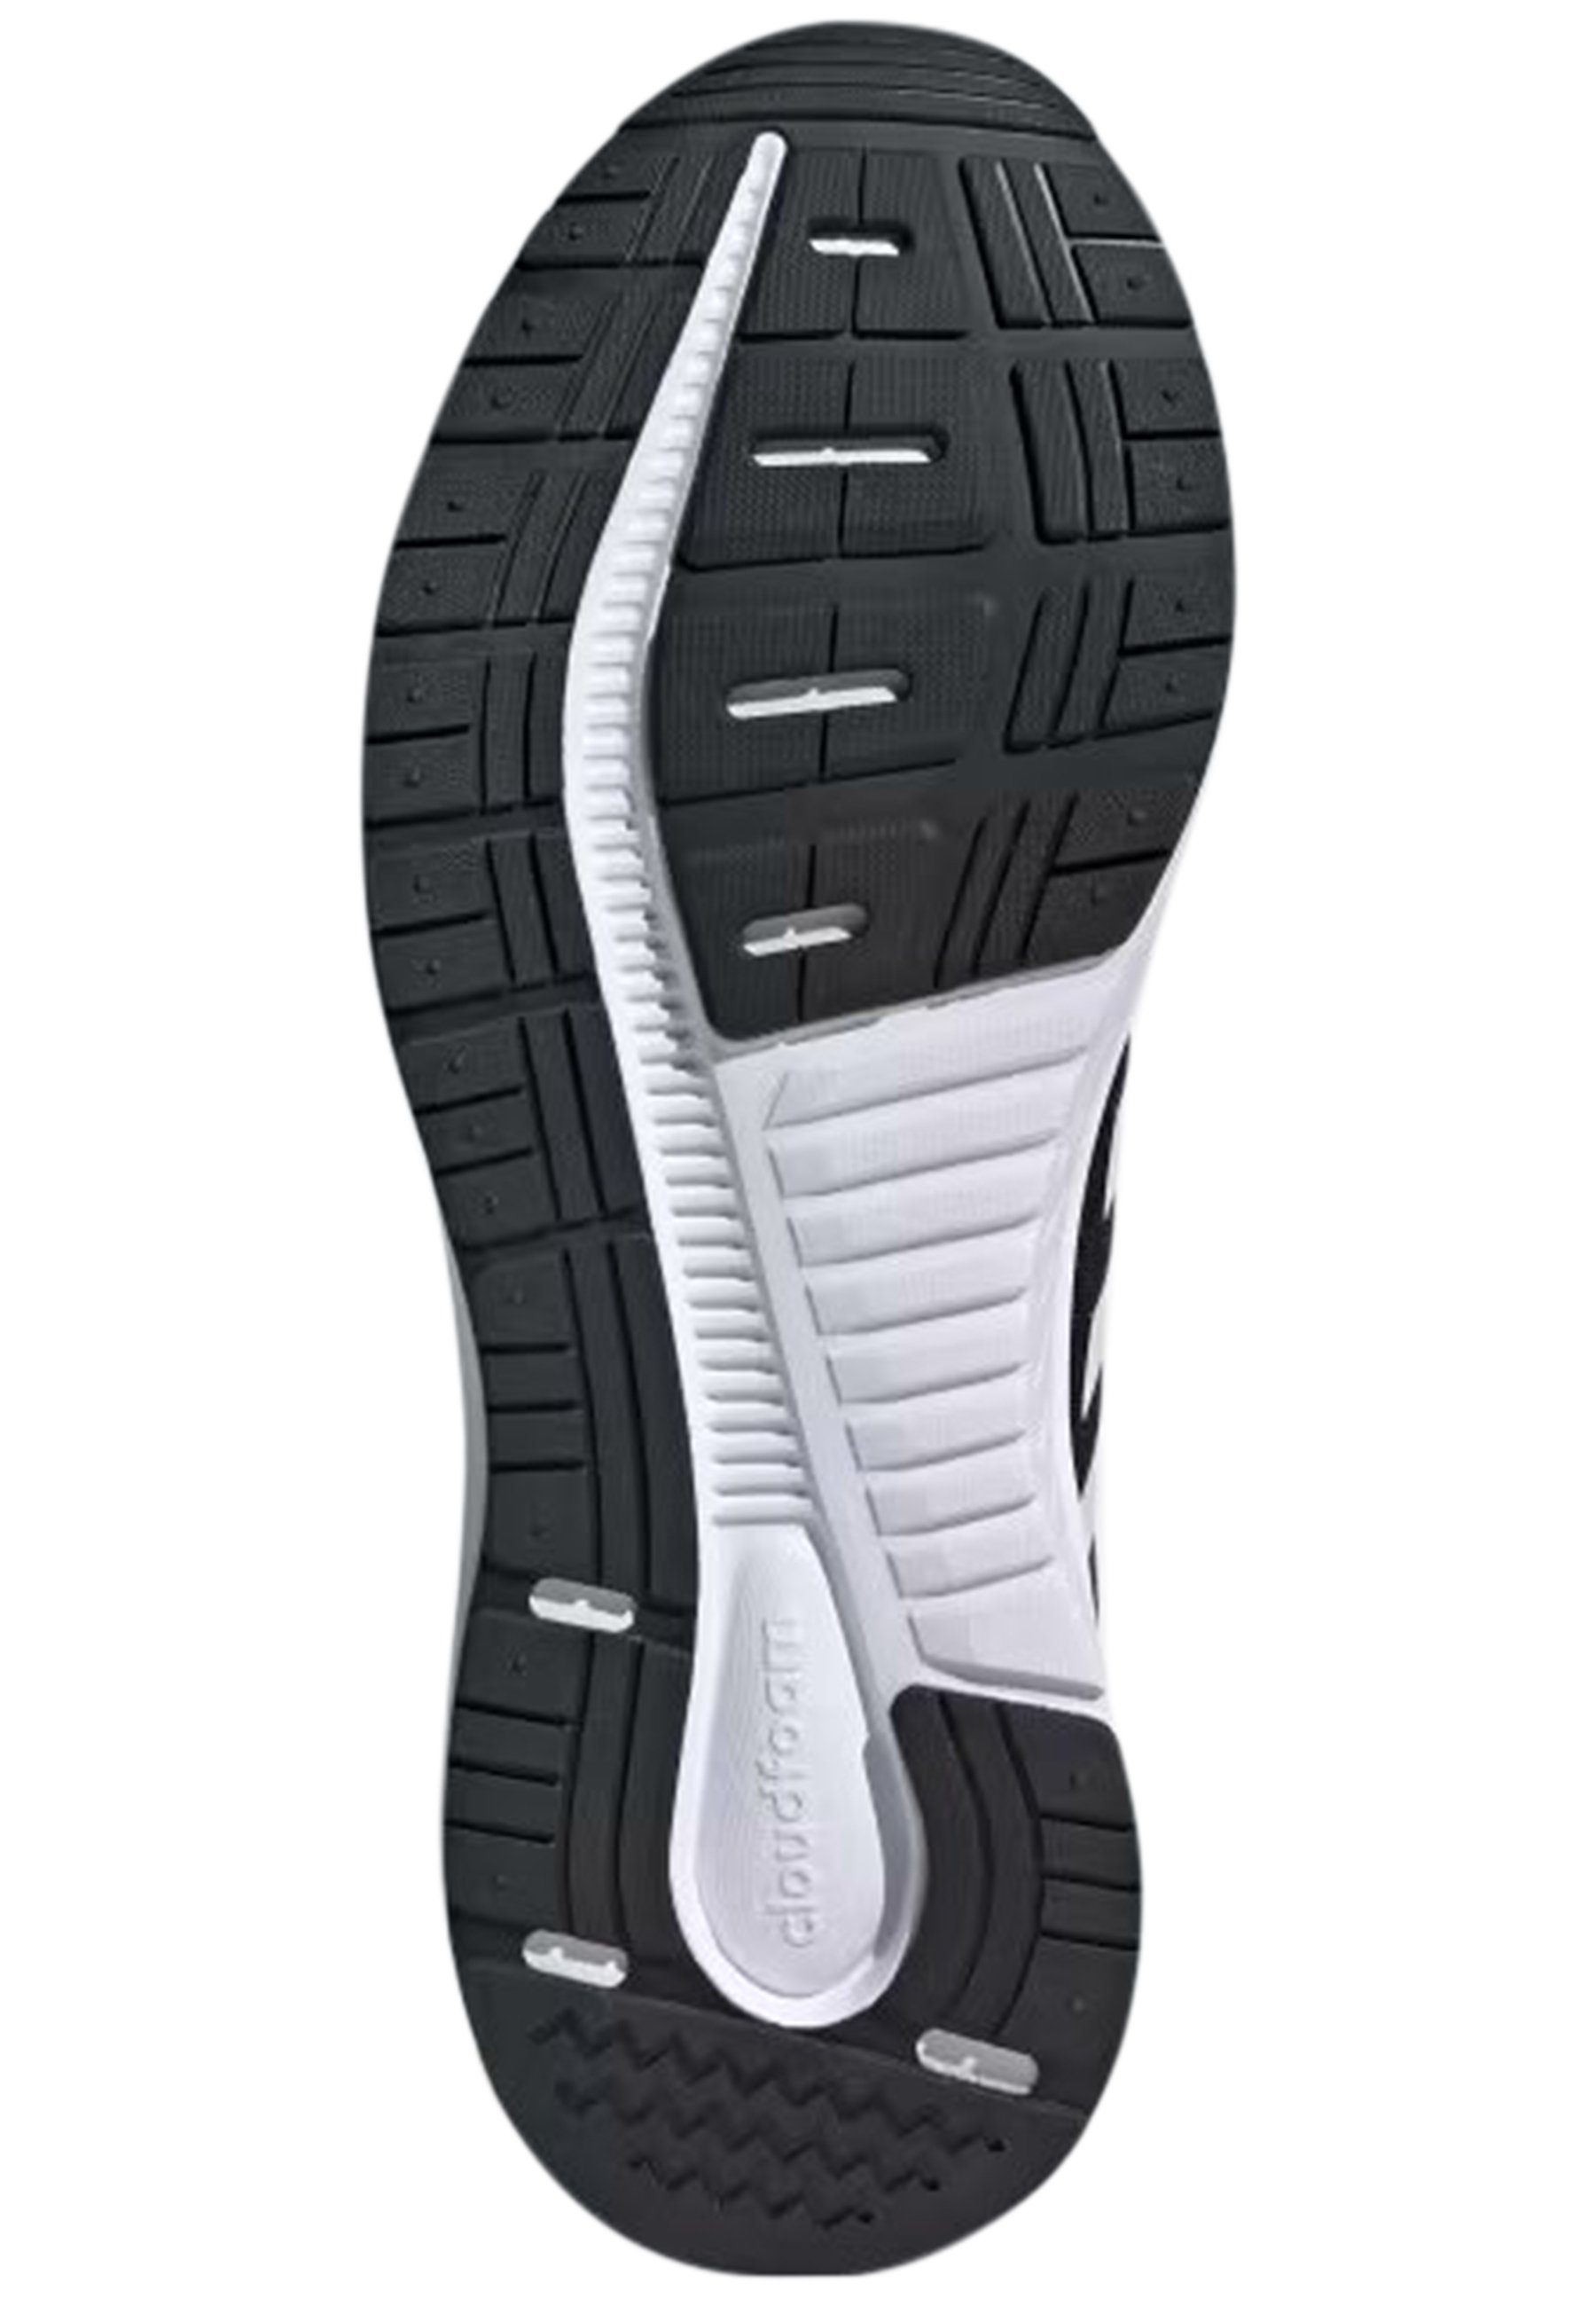 Originals Galaxy Sneaker 5 adidas